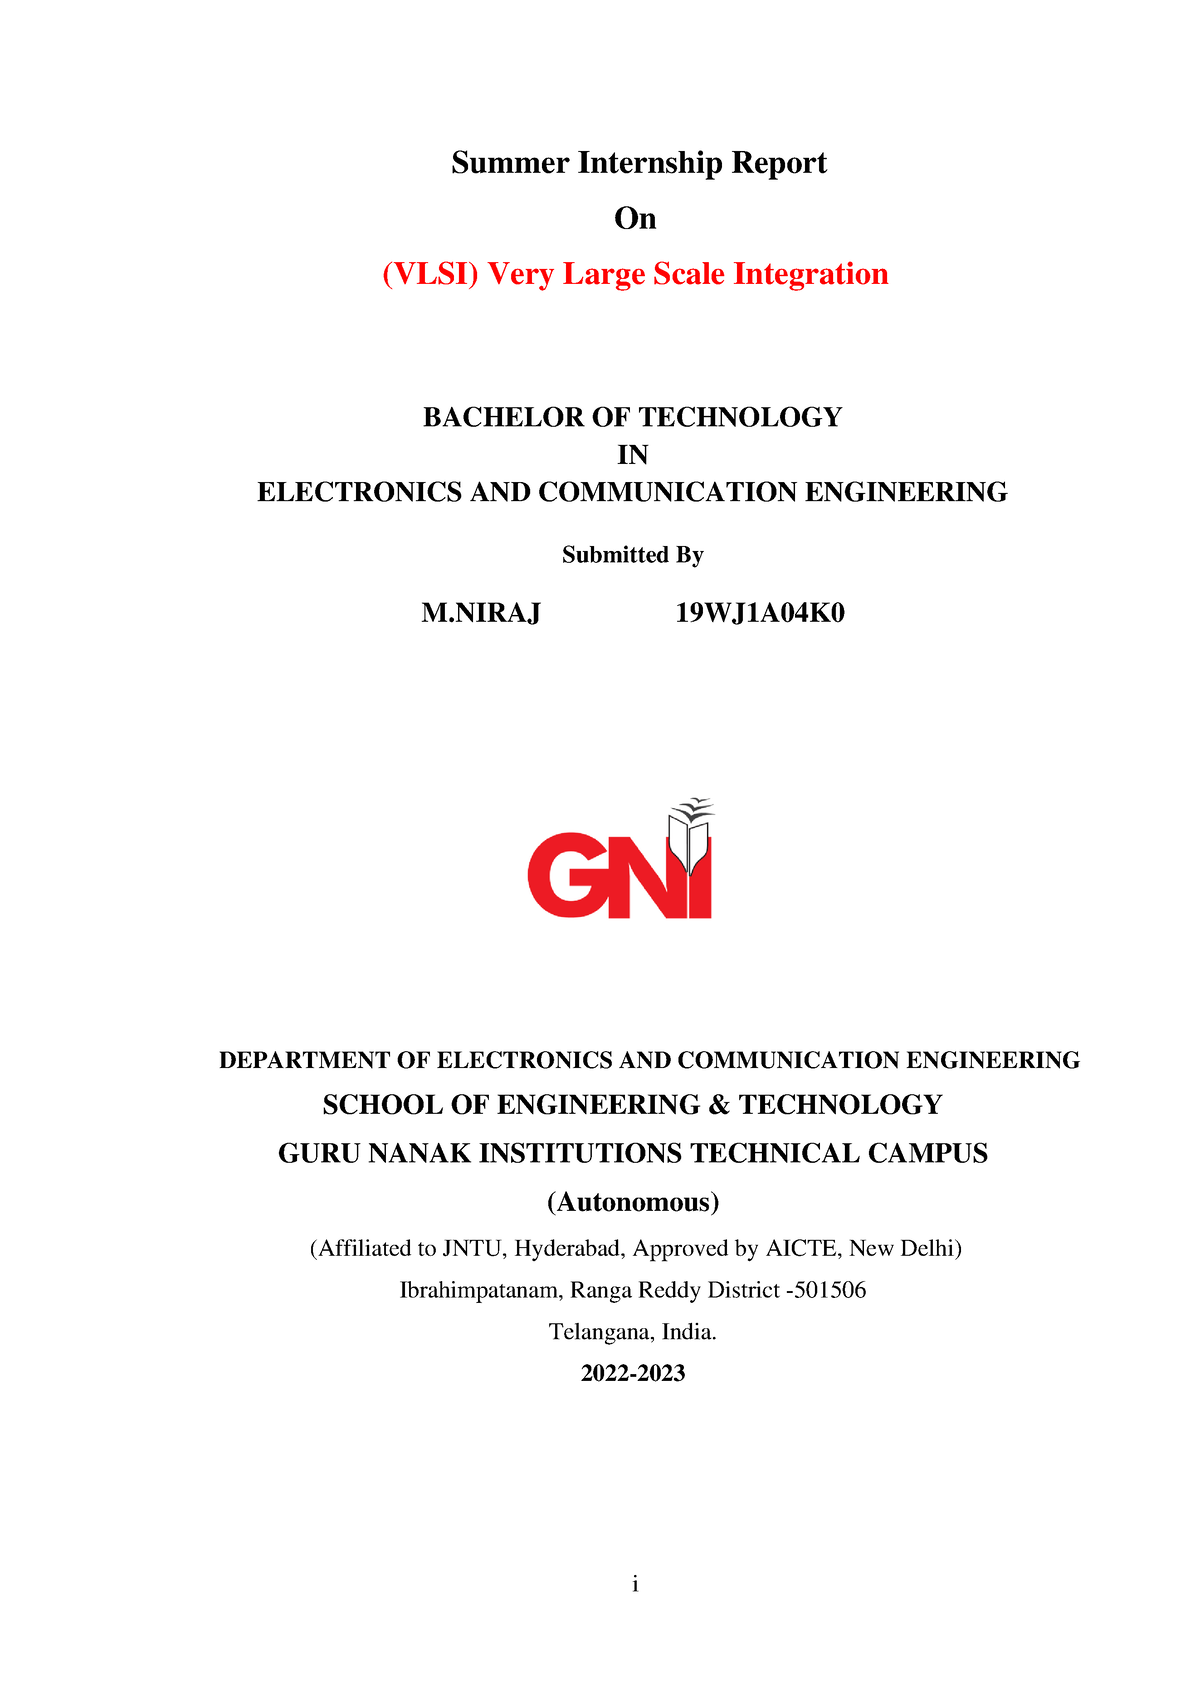 DOC VLSI final3 Niraj Vlsid i Summer Internship Report On (VLSI